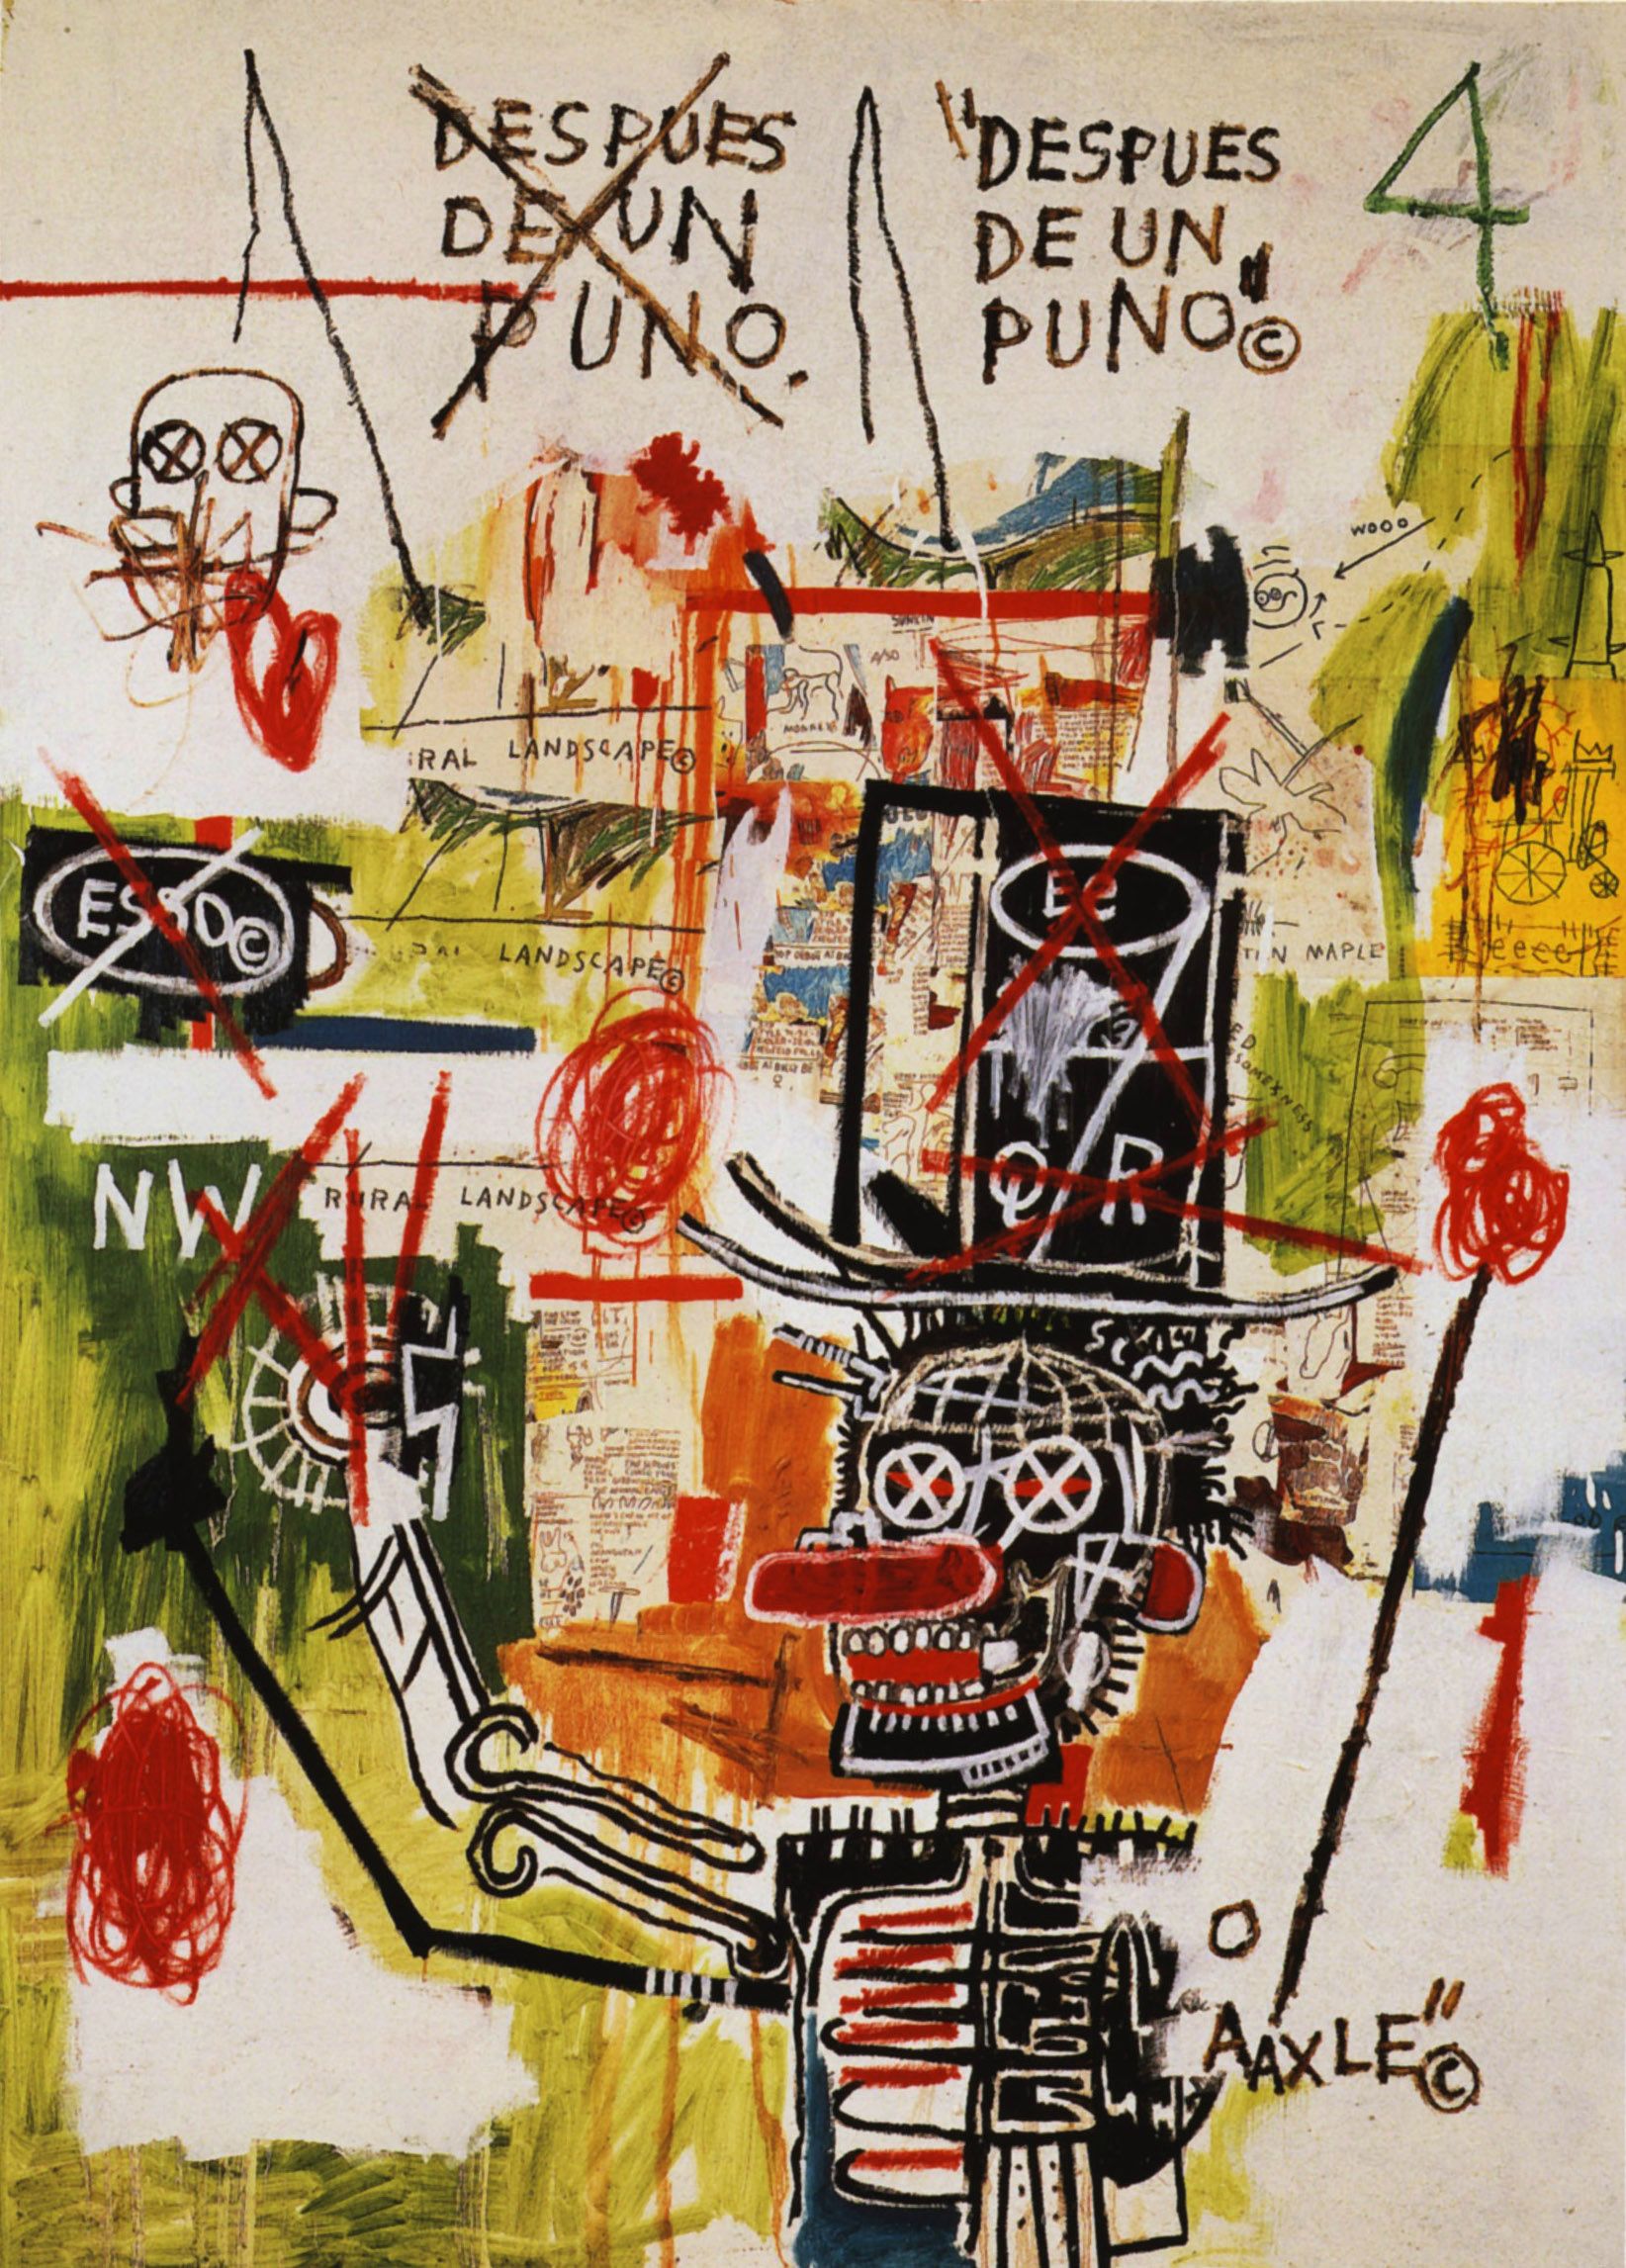 Download JeanMichel Basquiat painting in a Brooklyn studio Wallpaper   Wallpaperscom